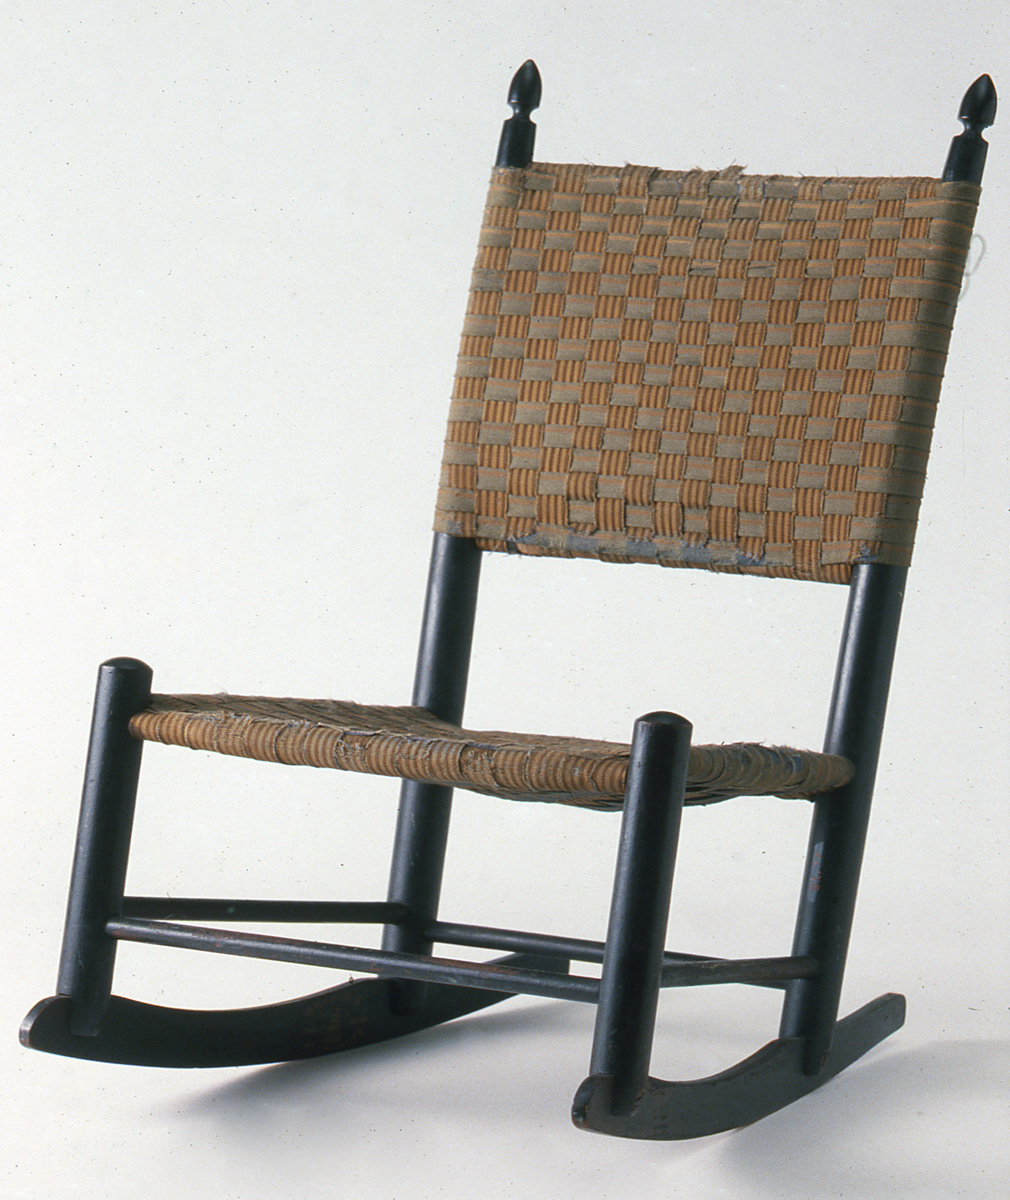 1982.0077 Chair, Rocking chair